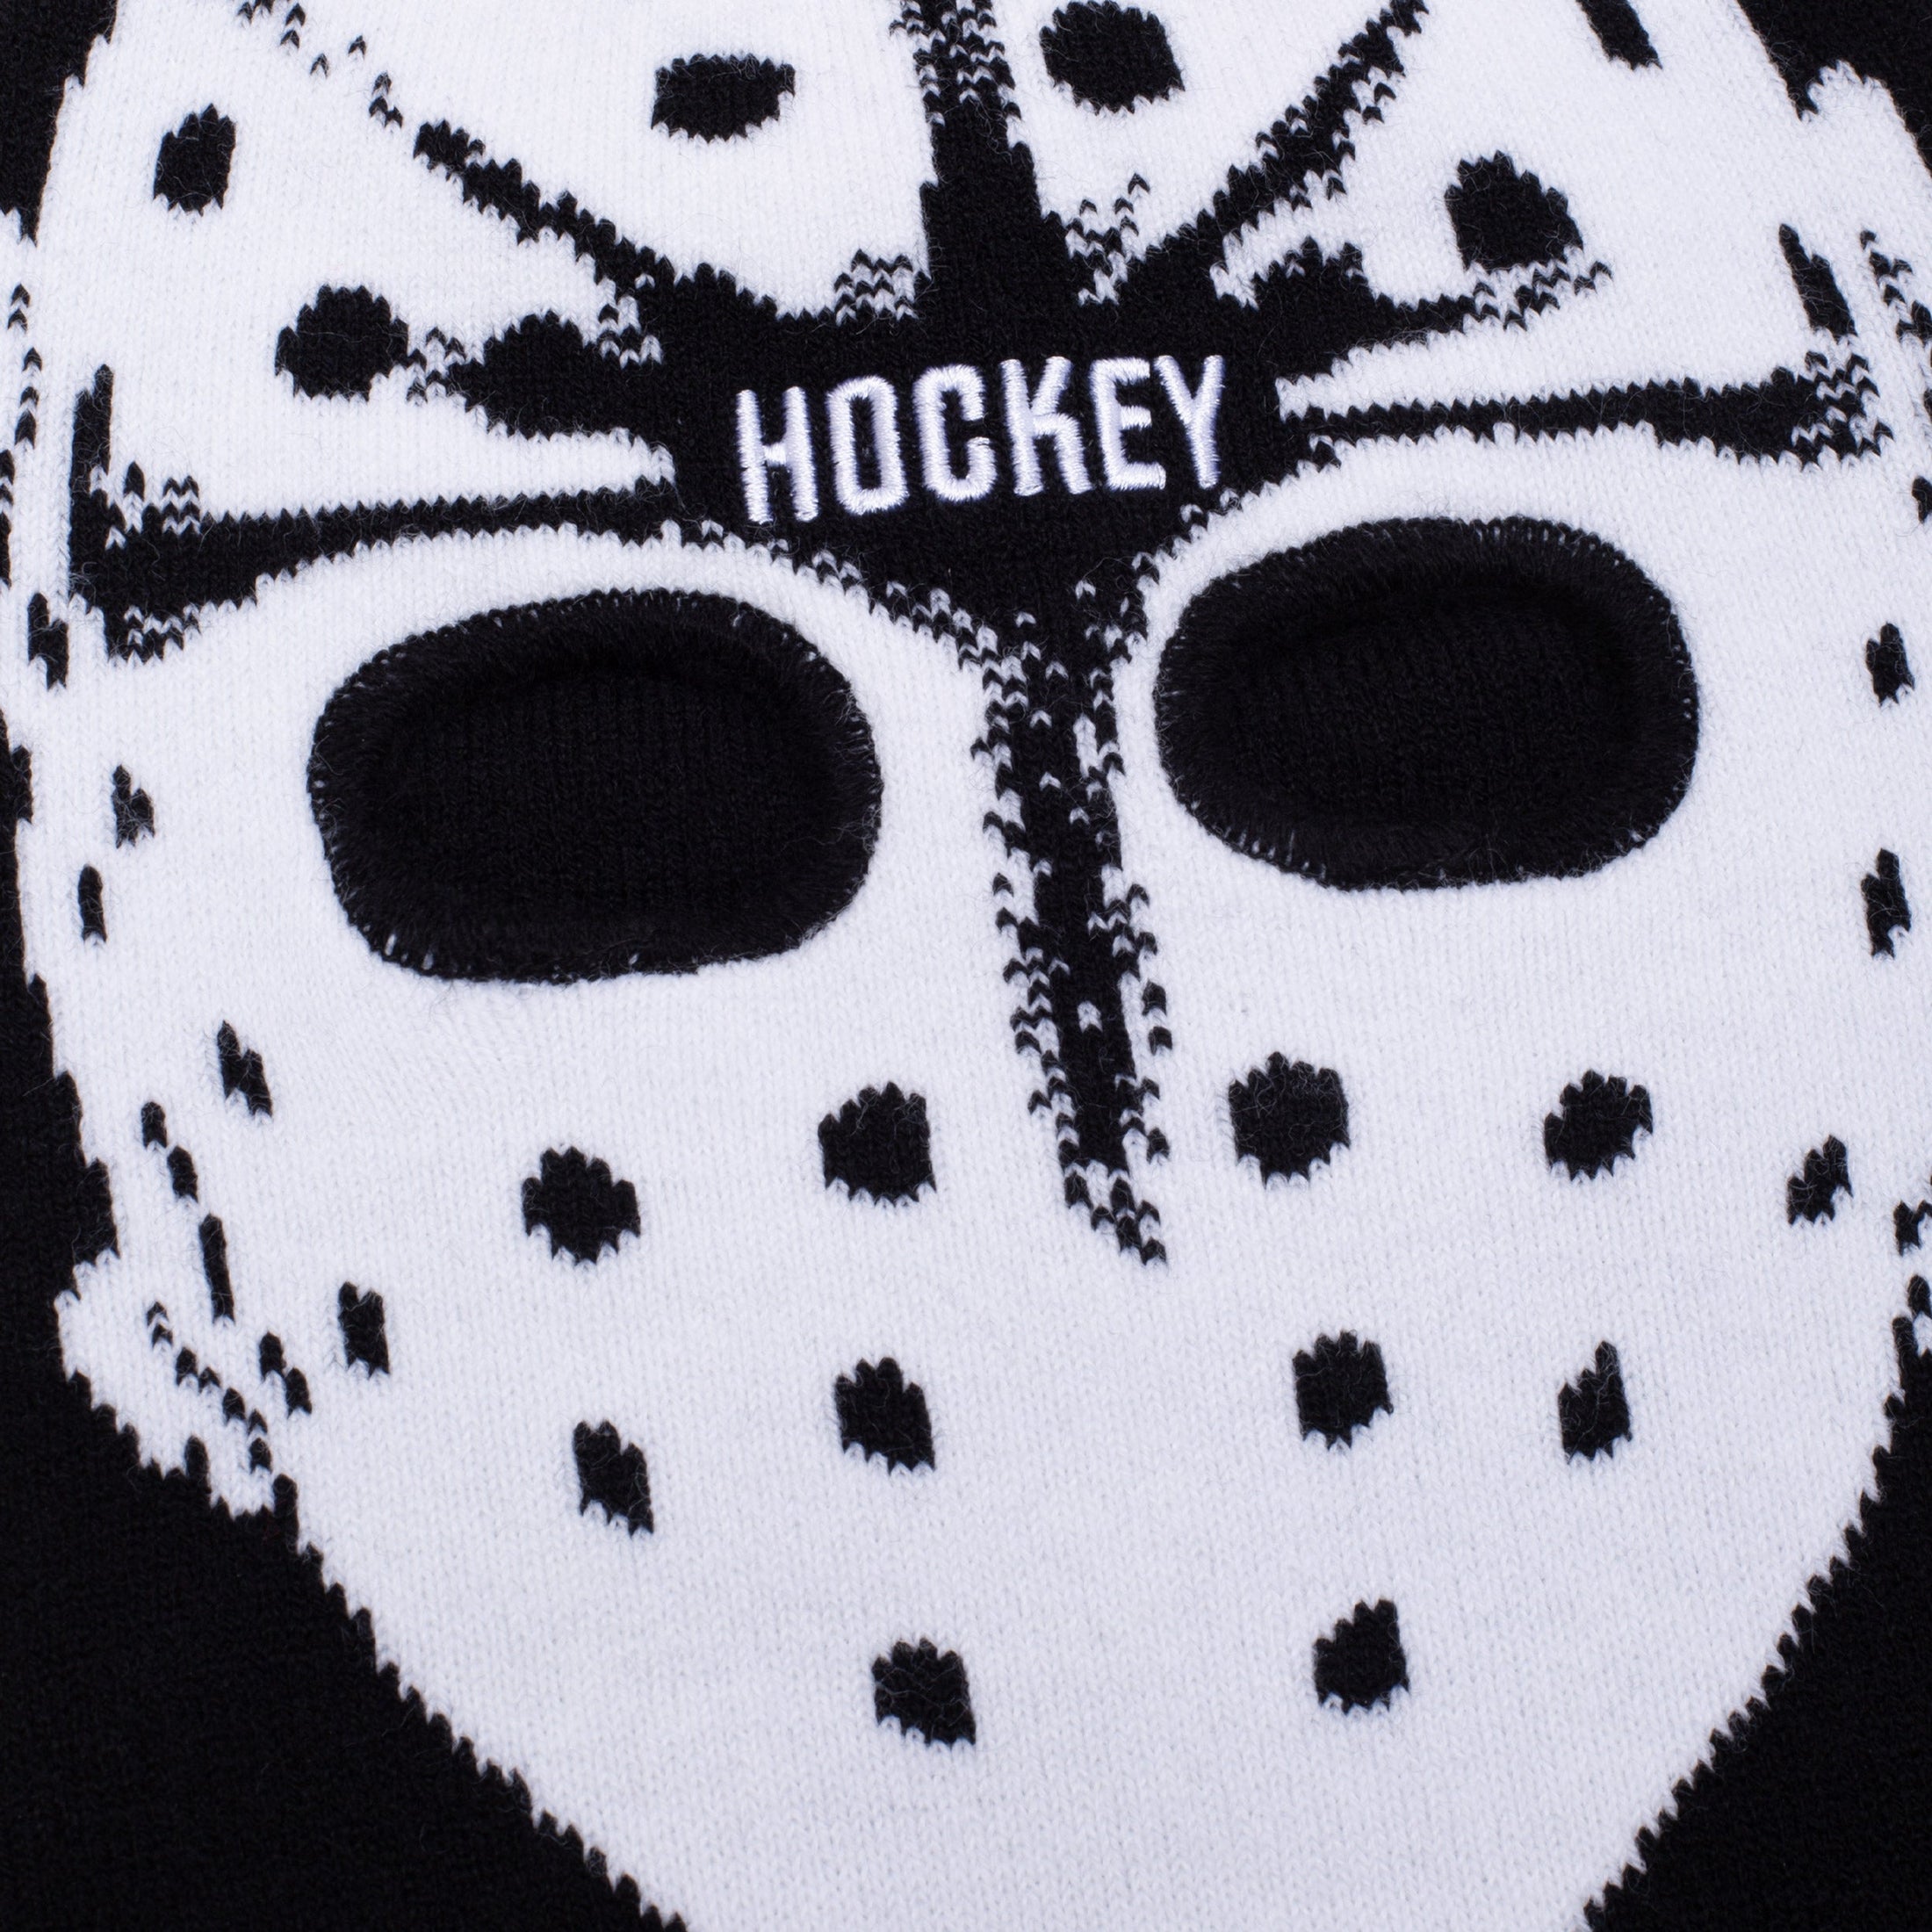 Hockey Hockski Mask Beanie Black